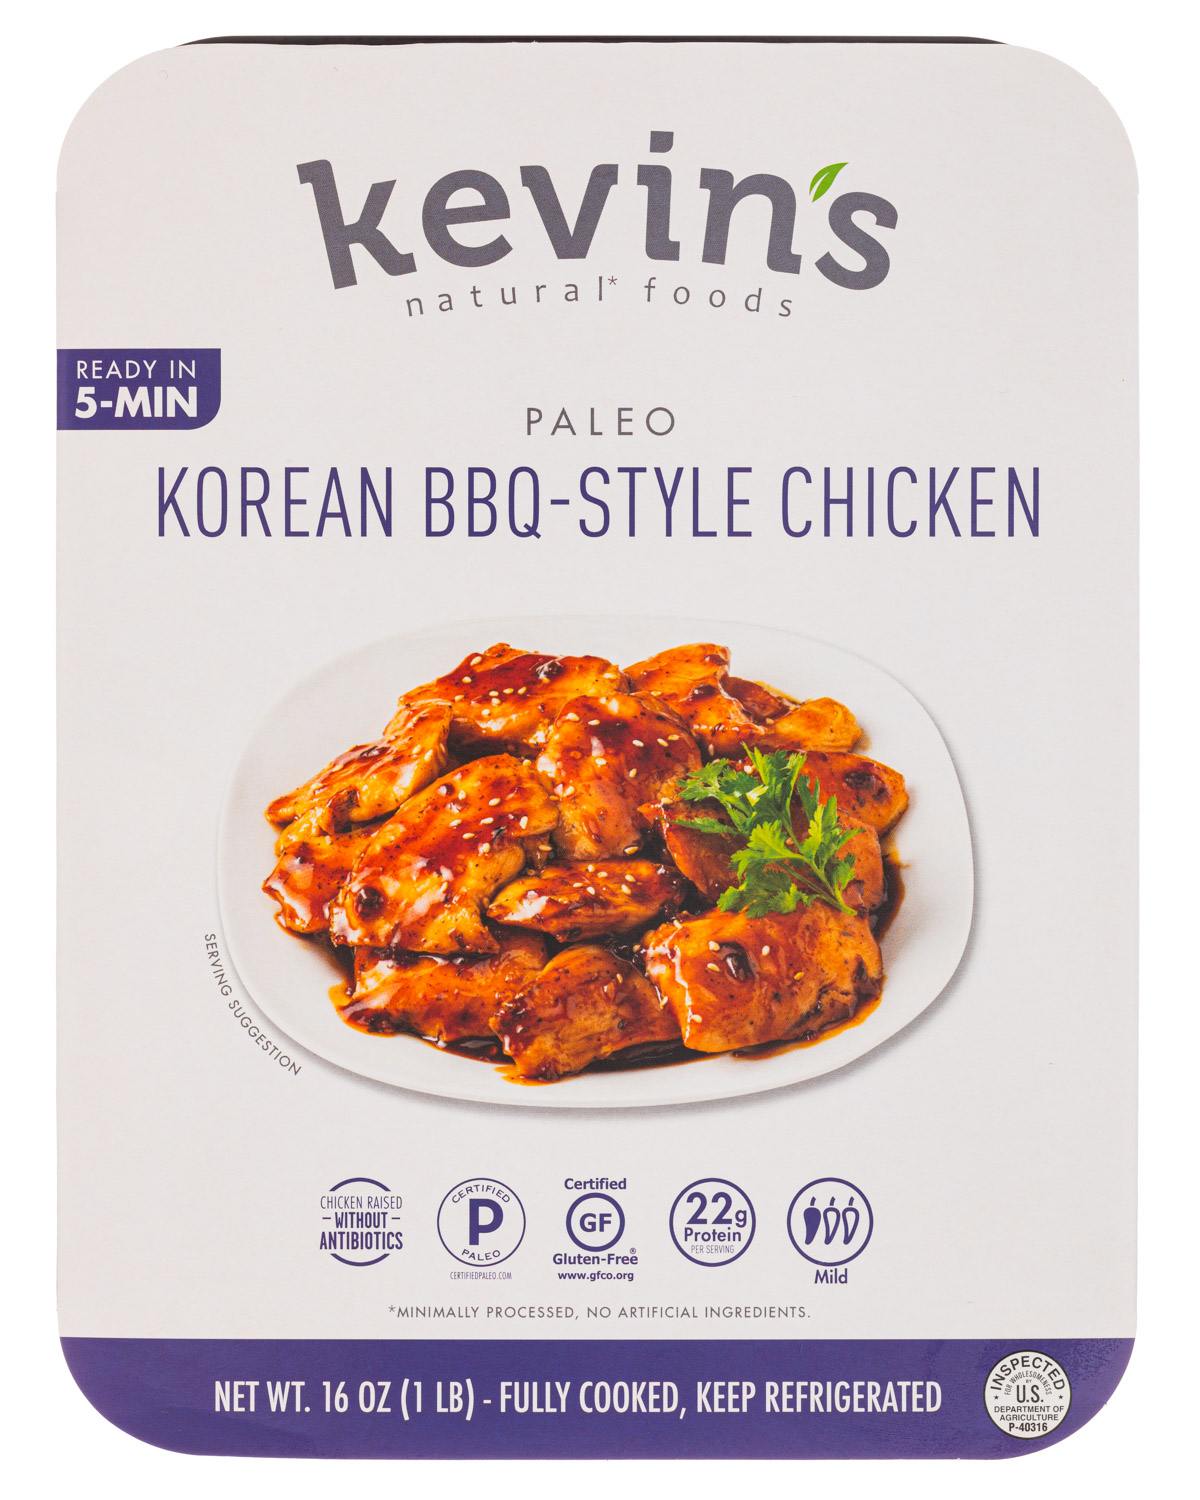 Korean-Style BBQ Chicken